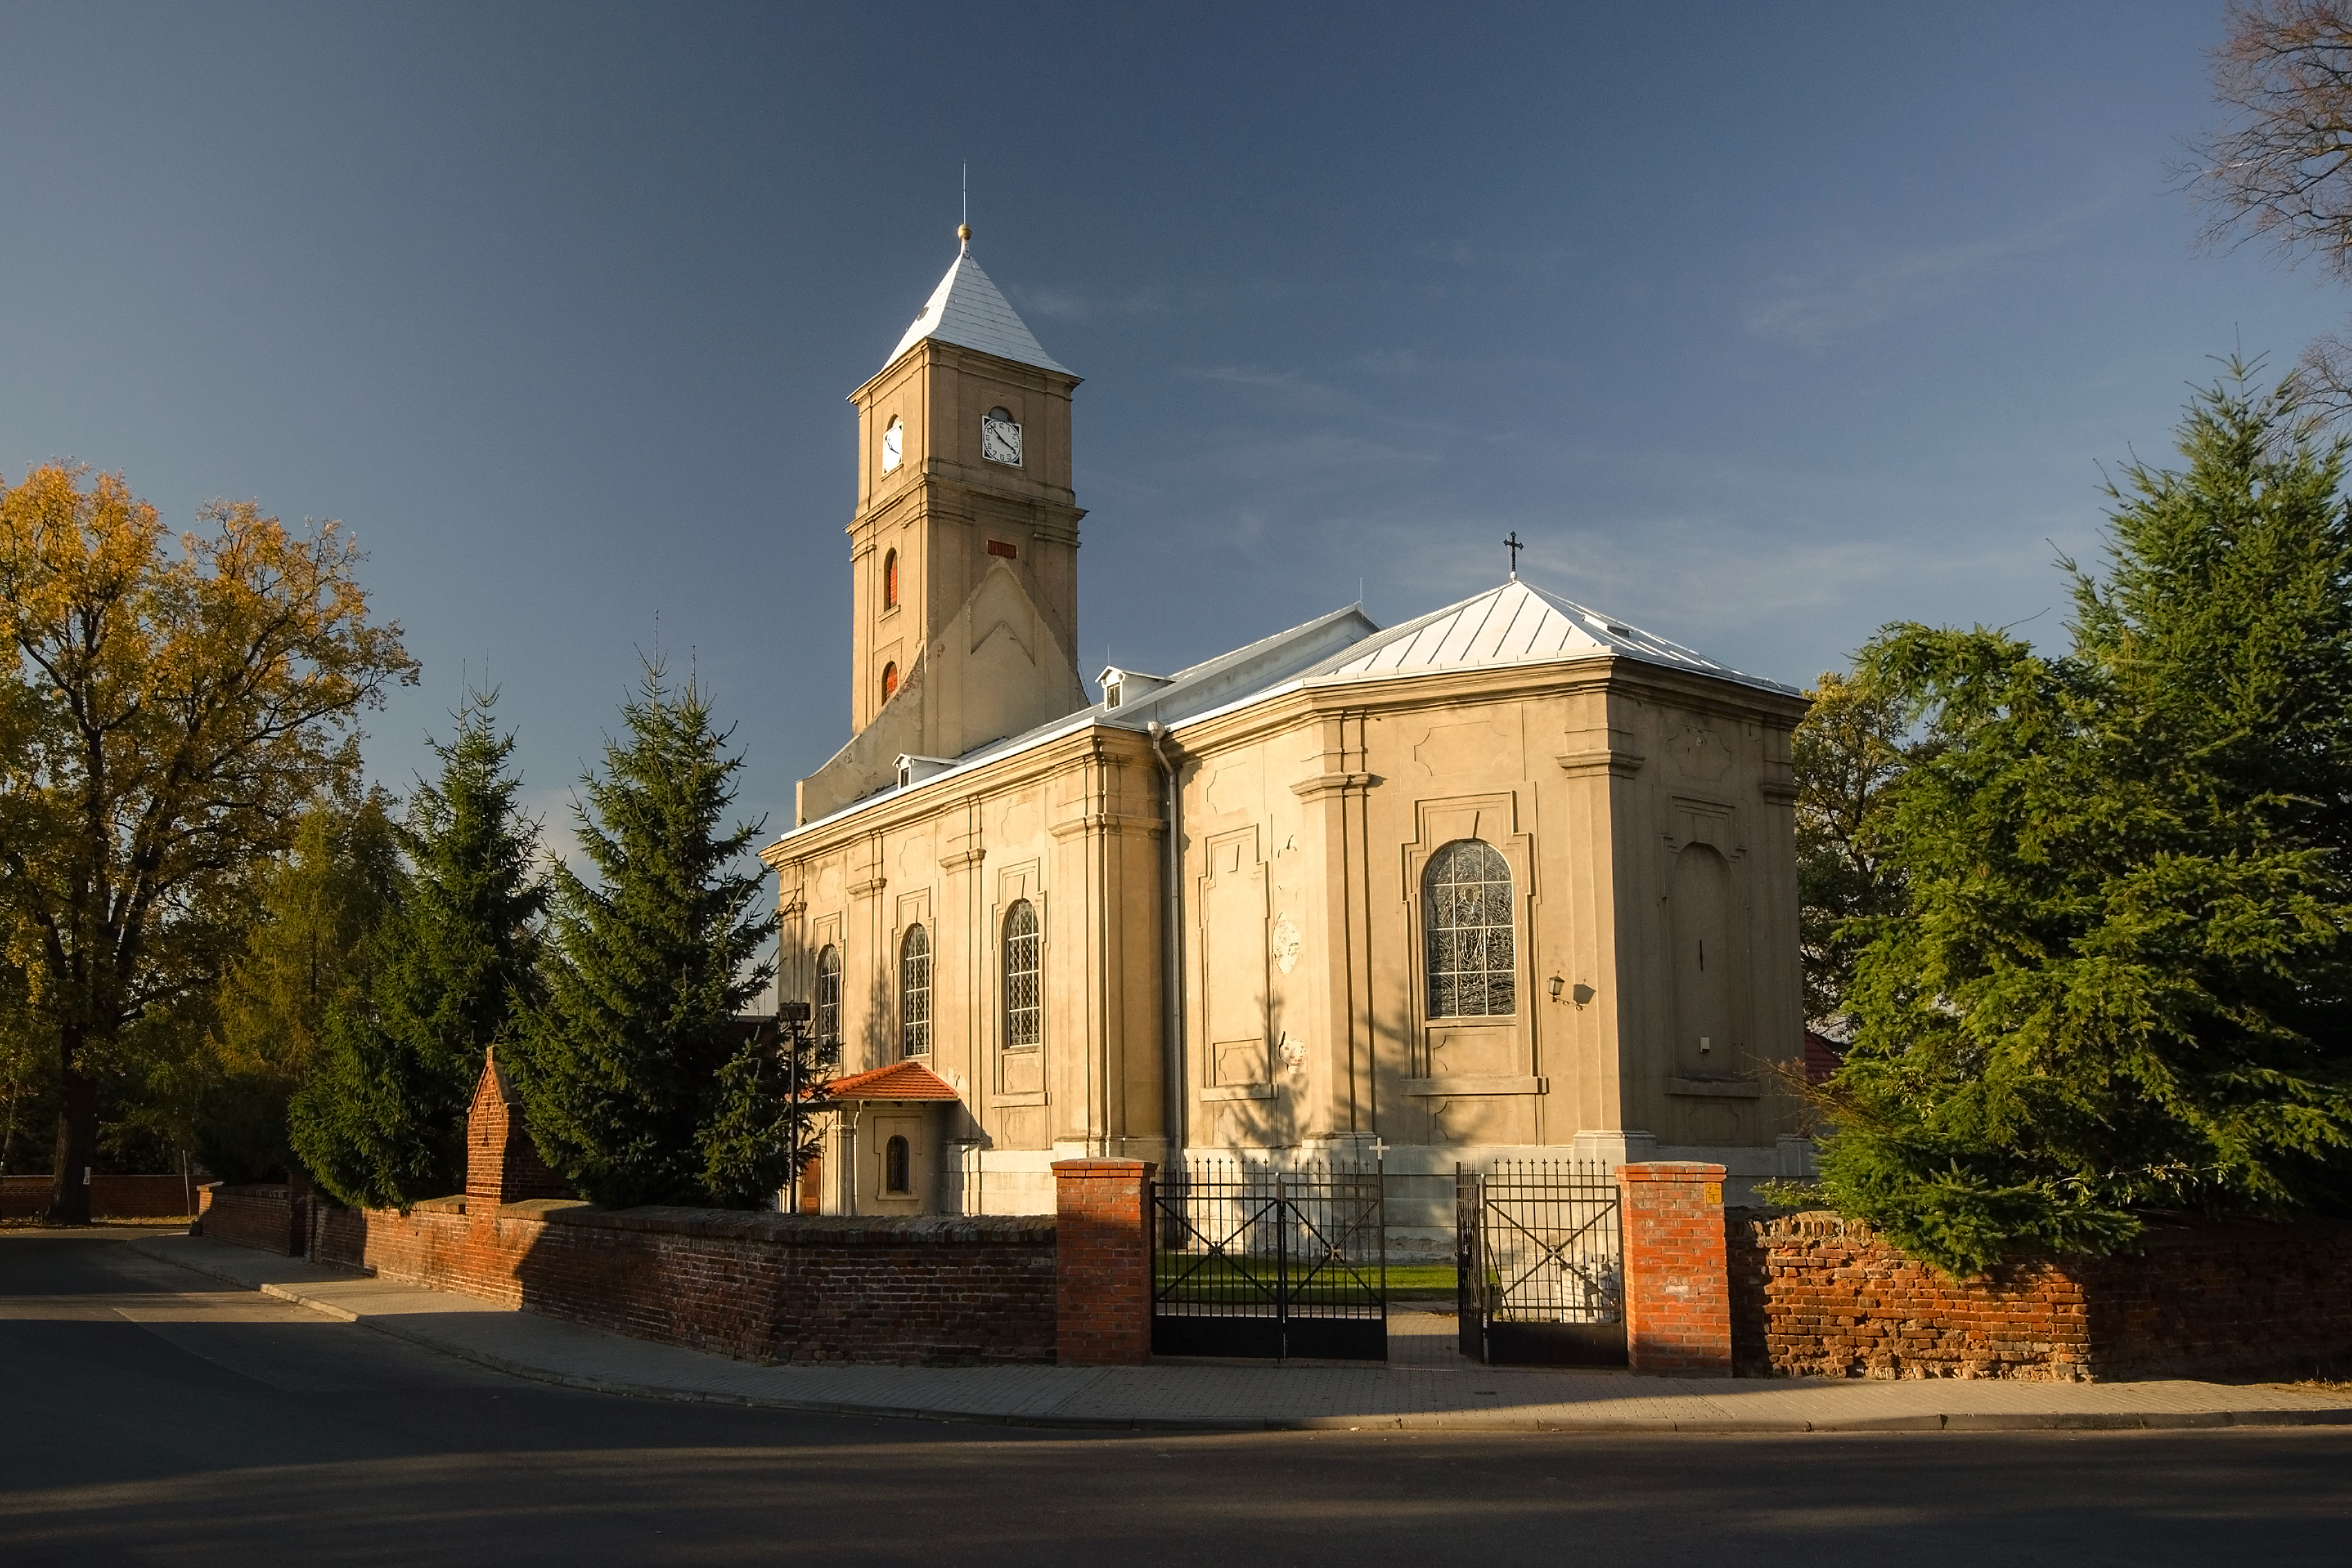 SM Gajków Kościół św Małgorzaty (2) ID 599531